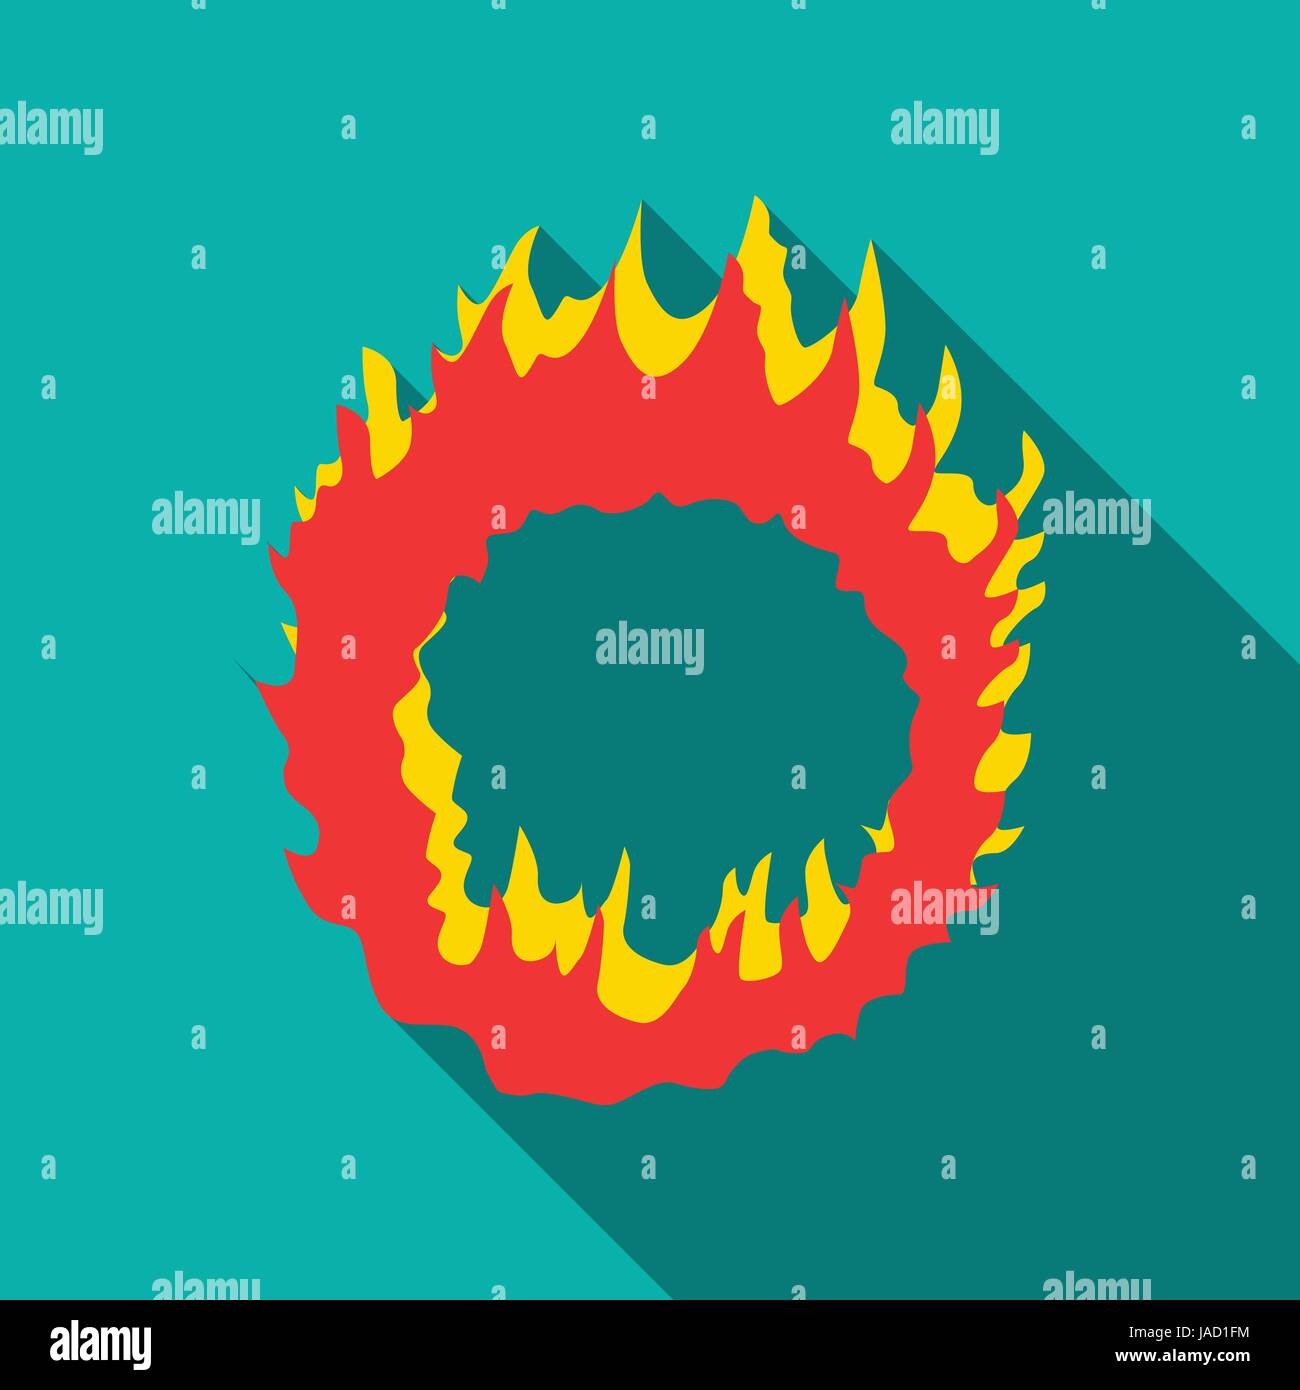 Ring Of Fire Symbol. Flache Darstellung der Ring des Feuers Vektor Icon für  Web auf Türkis Hintergrund isoliert Stock-Vektorgrafik - Alamy